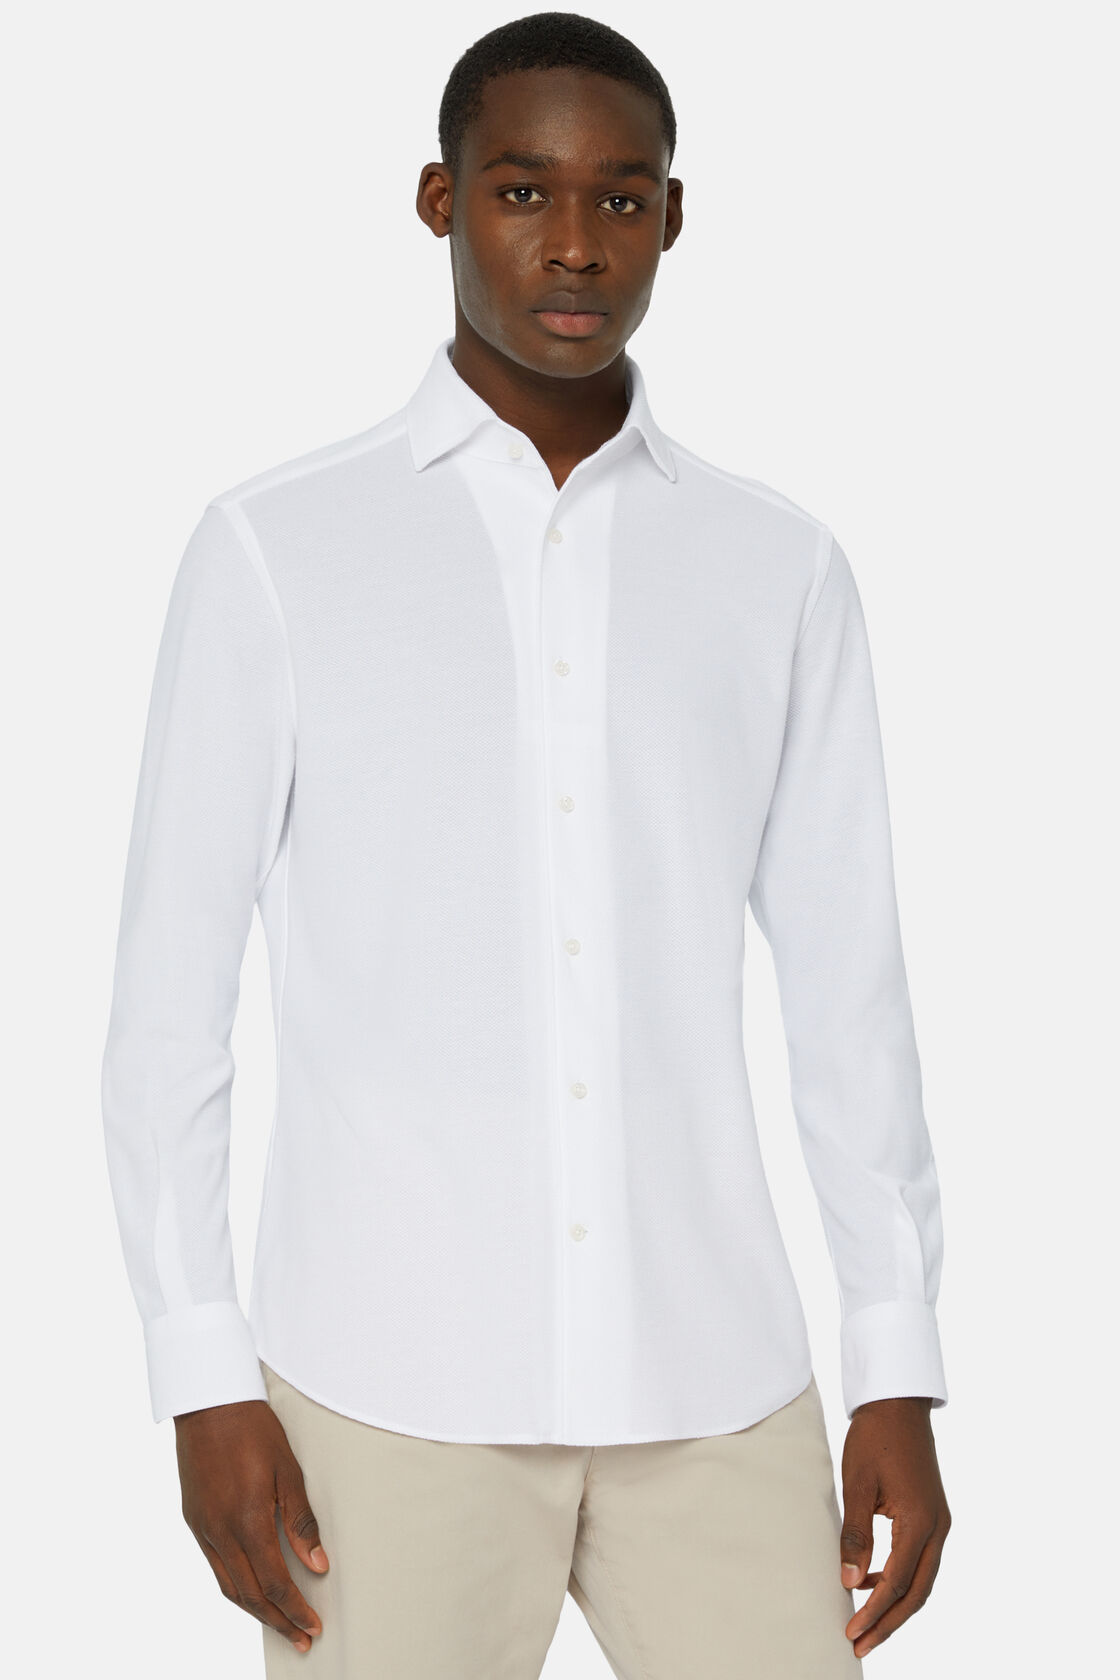 Japans Jersey Poloshirt met Regular Fit, White, hi-res